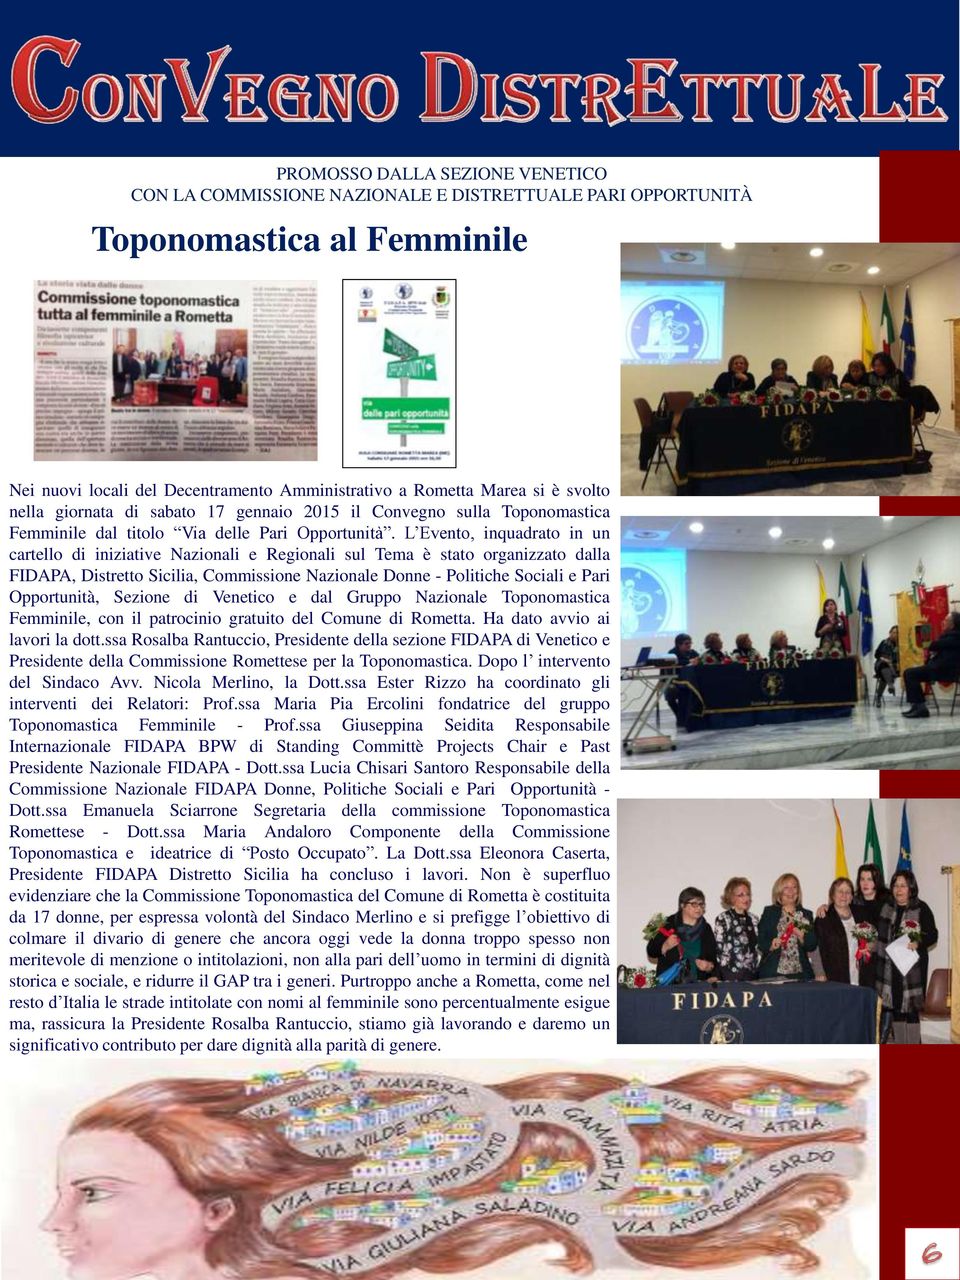 L Evento, inquadrato in un cartello di iniziative Nazionali e Regionali sul Tema è stato organizzato dalla FIDAPA, Distretto Sicilia, Commissione Nazionale Donne - Politiche Sociali e Pari